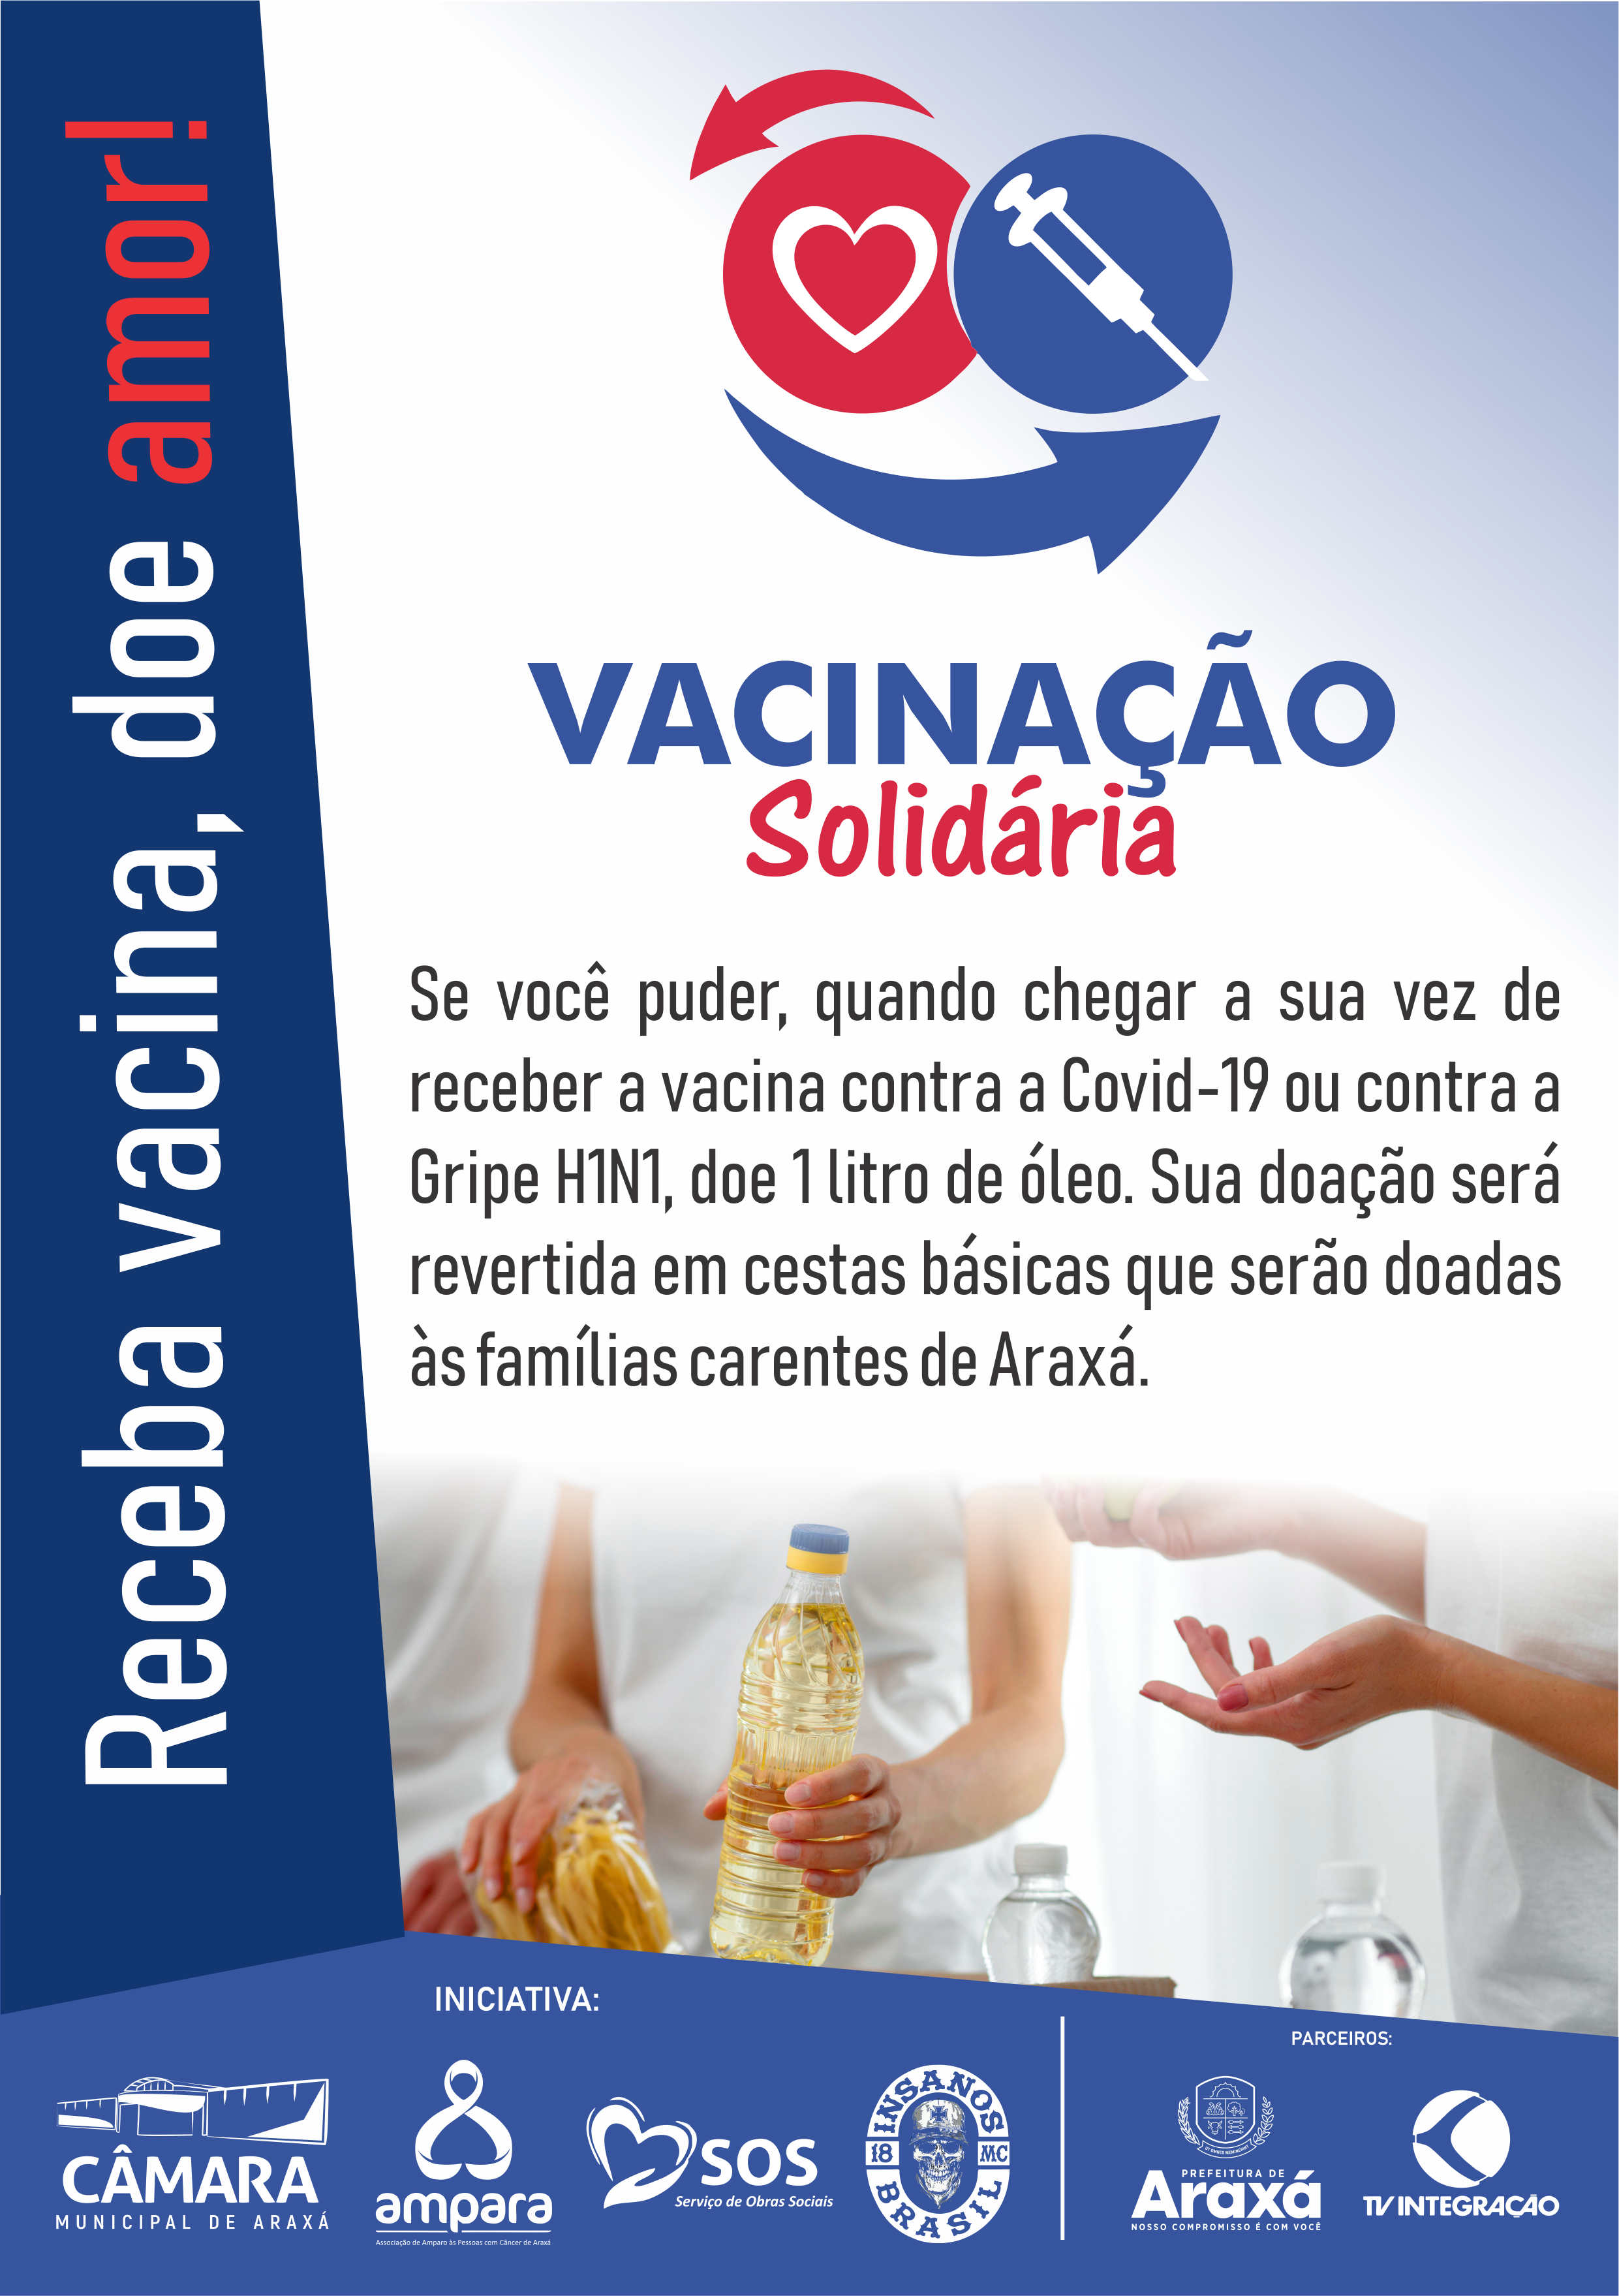 Câmara Municipal de Araxá apoia campanha Vacinação Solidária em prol de instituições